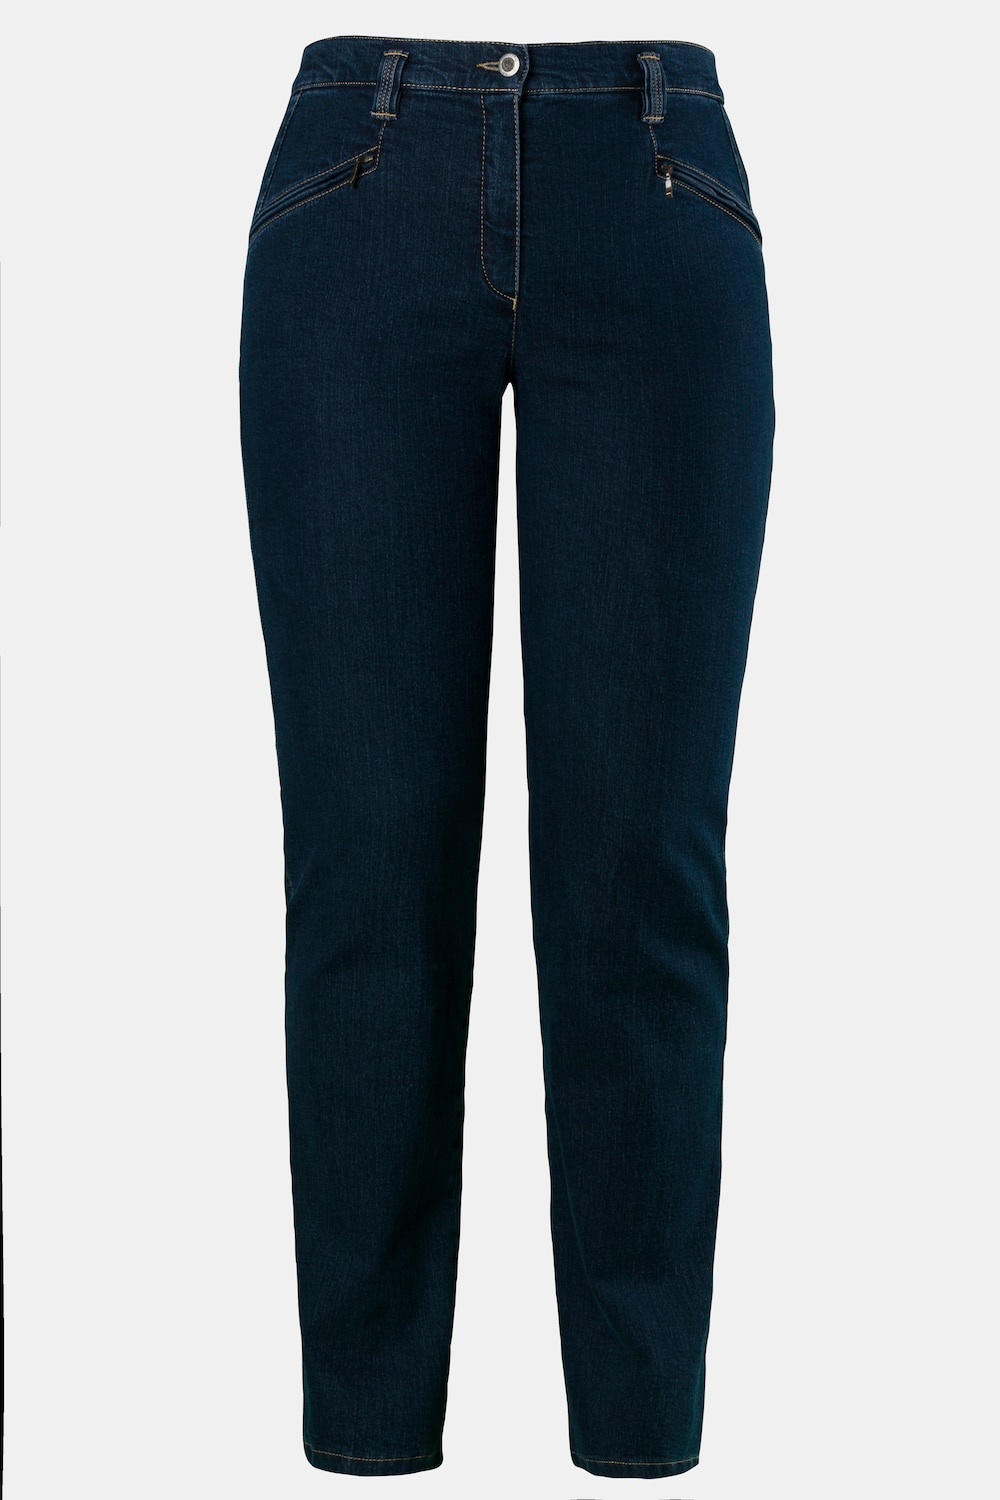 Grote Maten jeans mony, Dames, blauw, Maat: 31, Katoen/Synthetische vezels, Ulla Popken